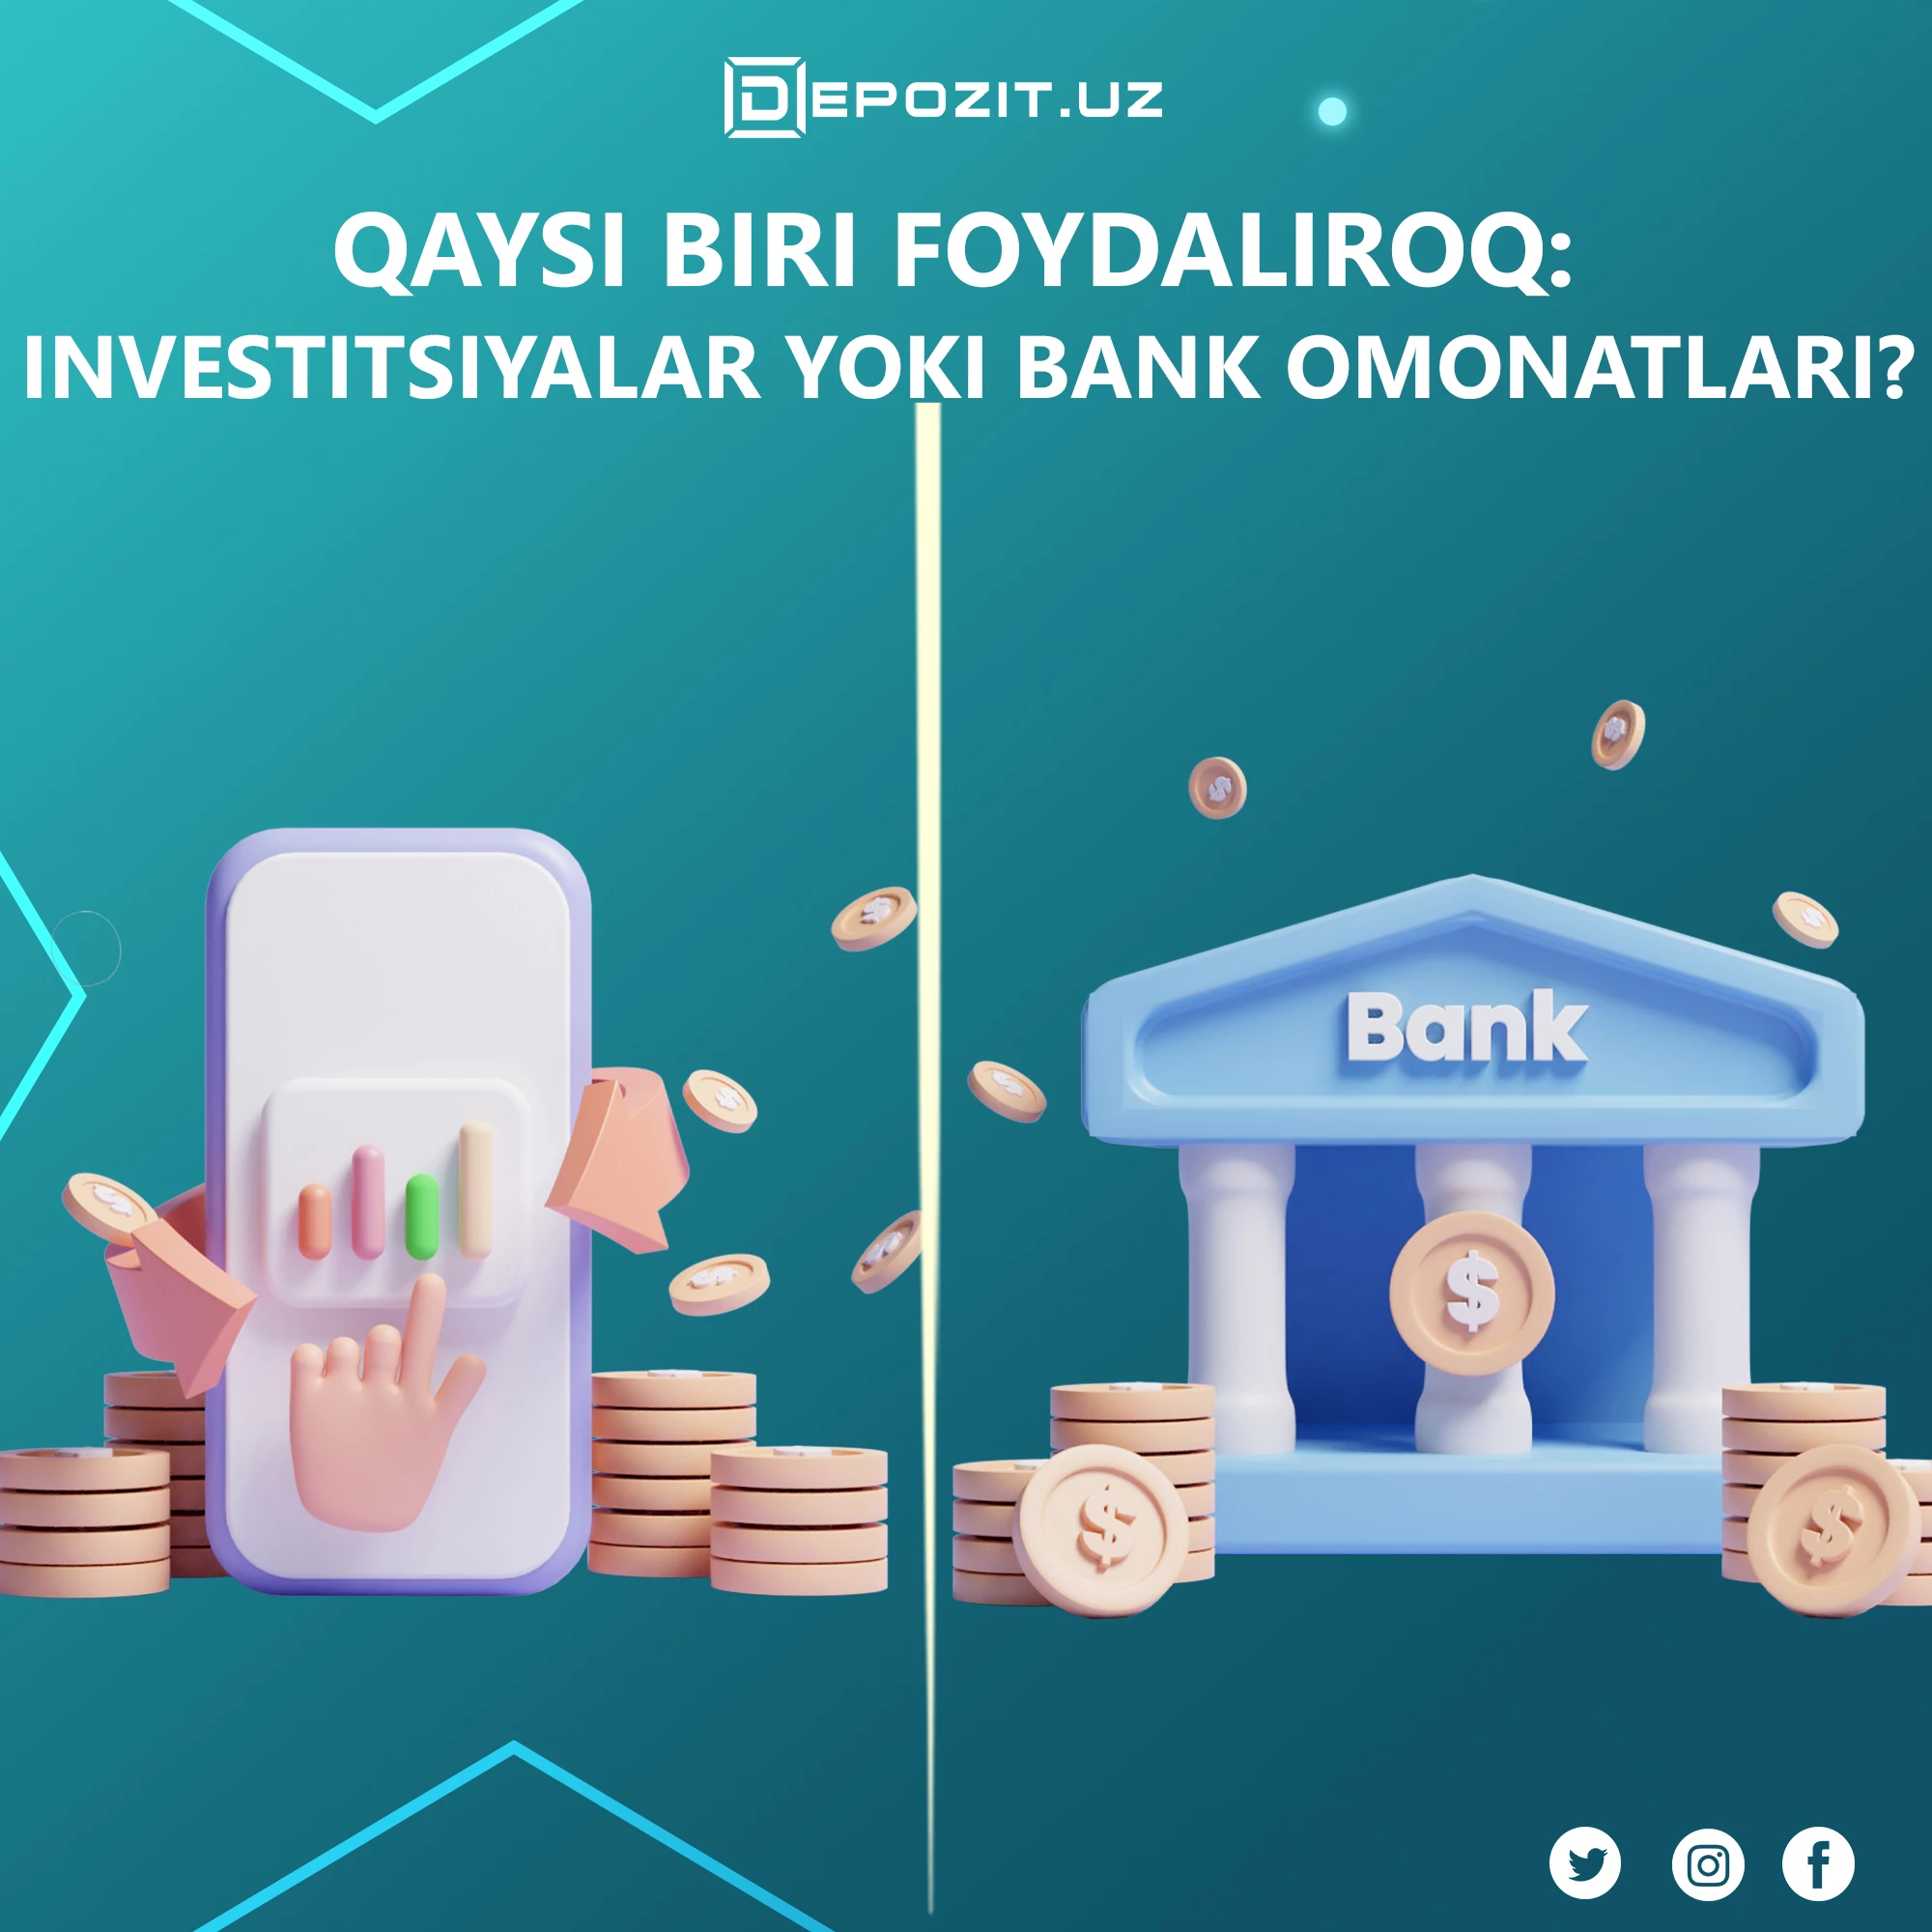 Qaysi biri foydaliroq: investitsiyalar yoki bank omonatlari?